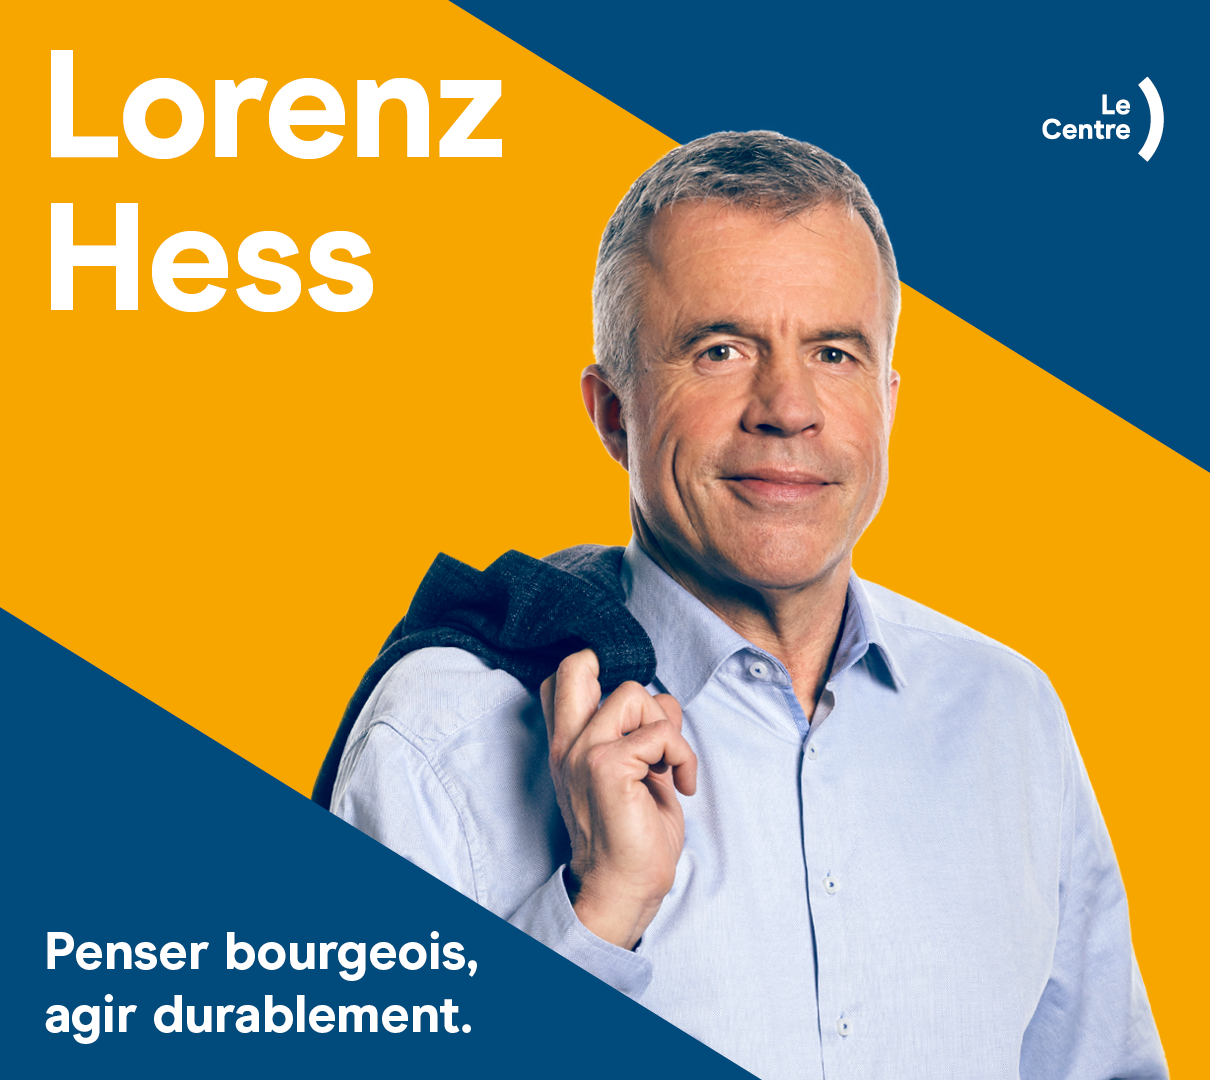 Lorenz Hess - Le Centre